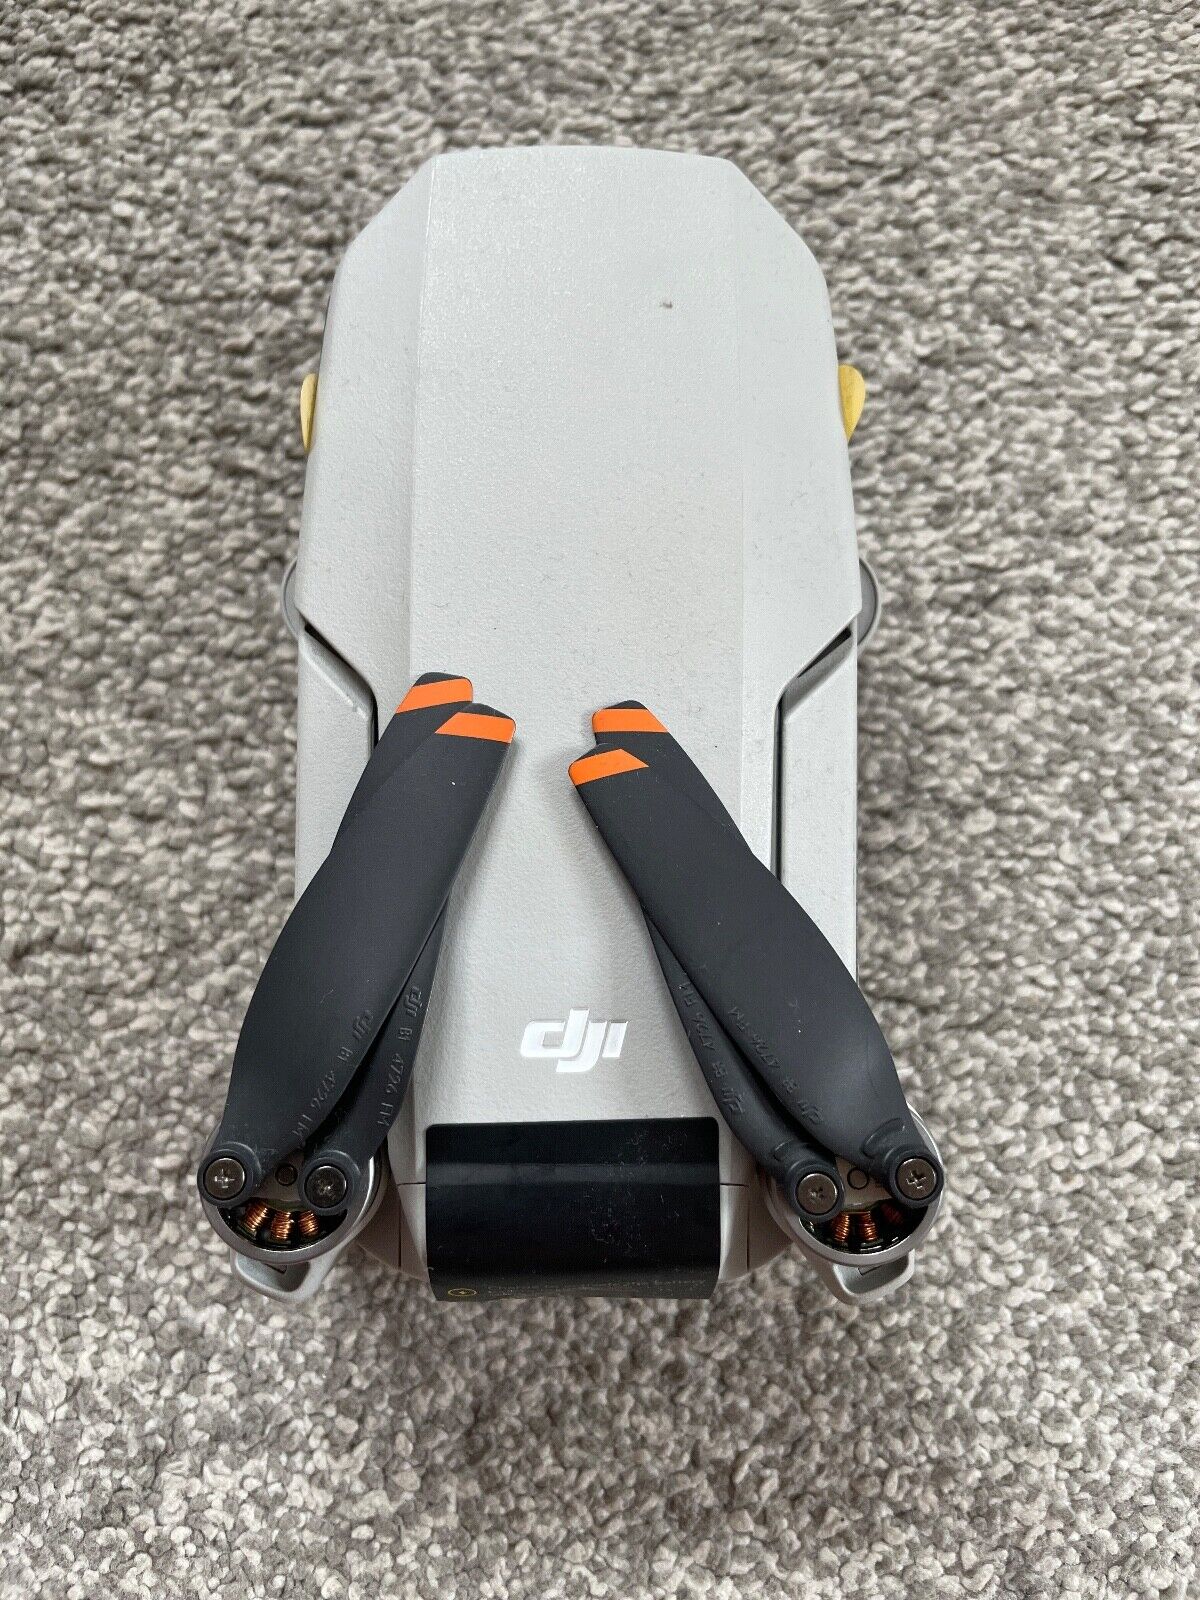 Dji Mini 2 Ultra Light 249g Drone (Parts)